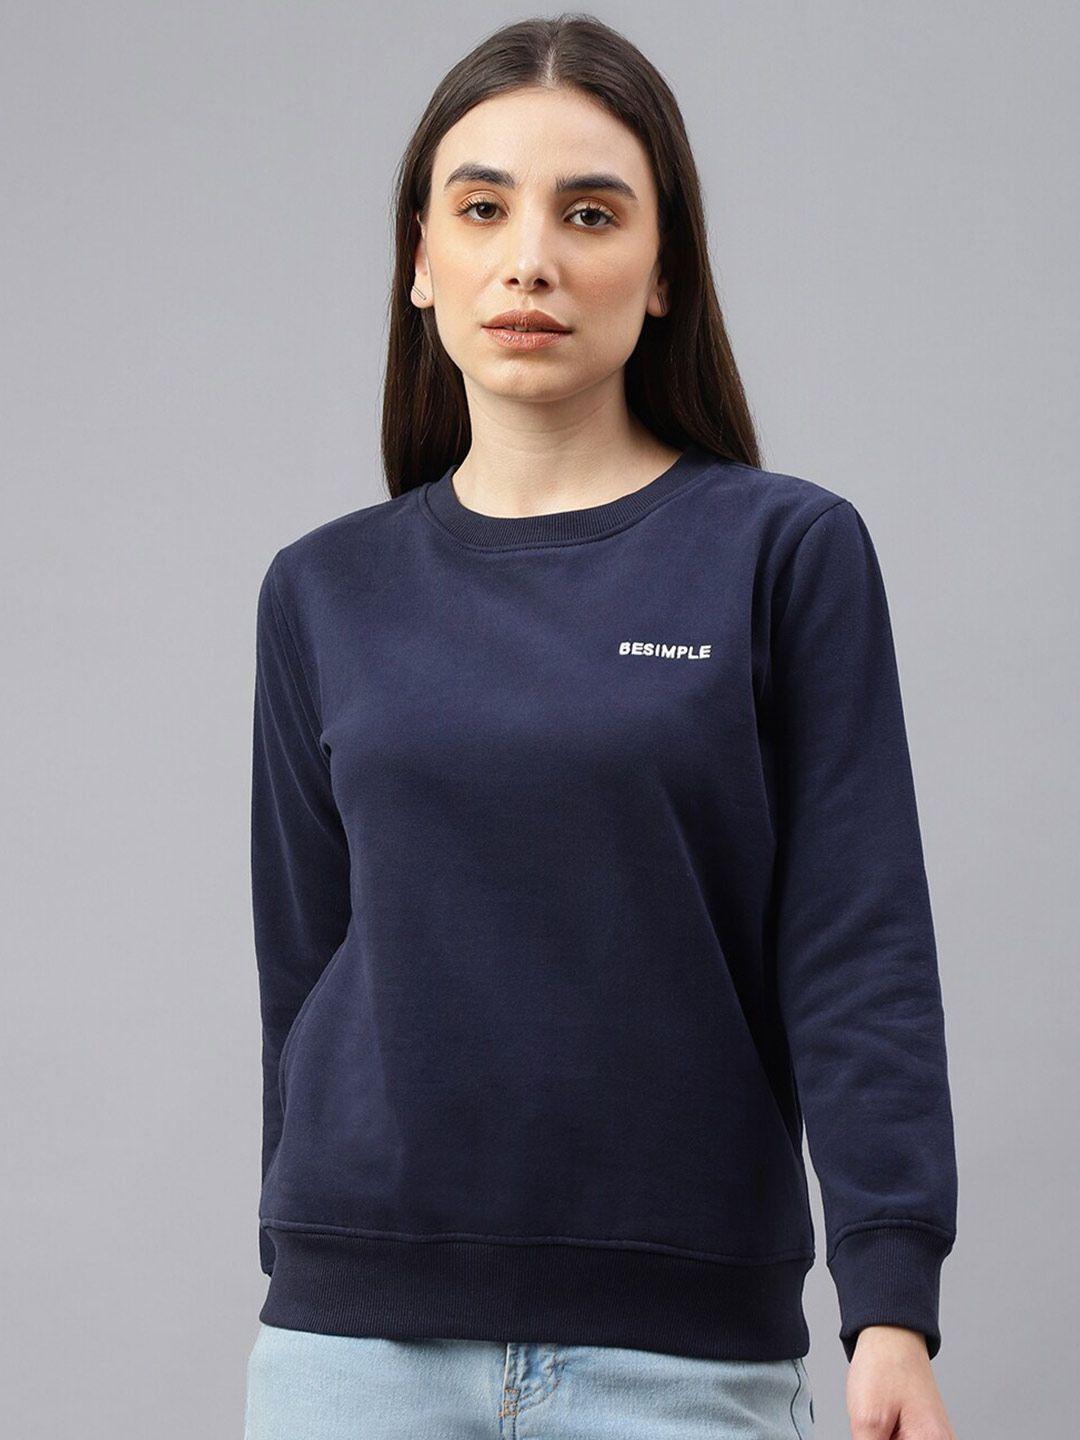 besimple women solid sweatshirt